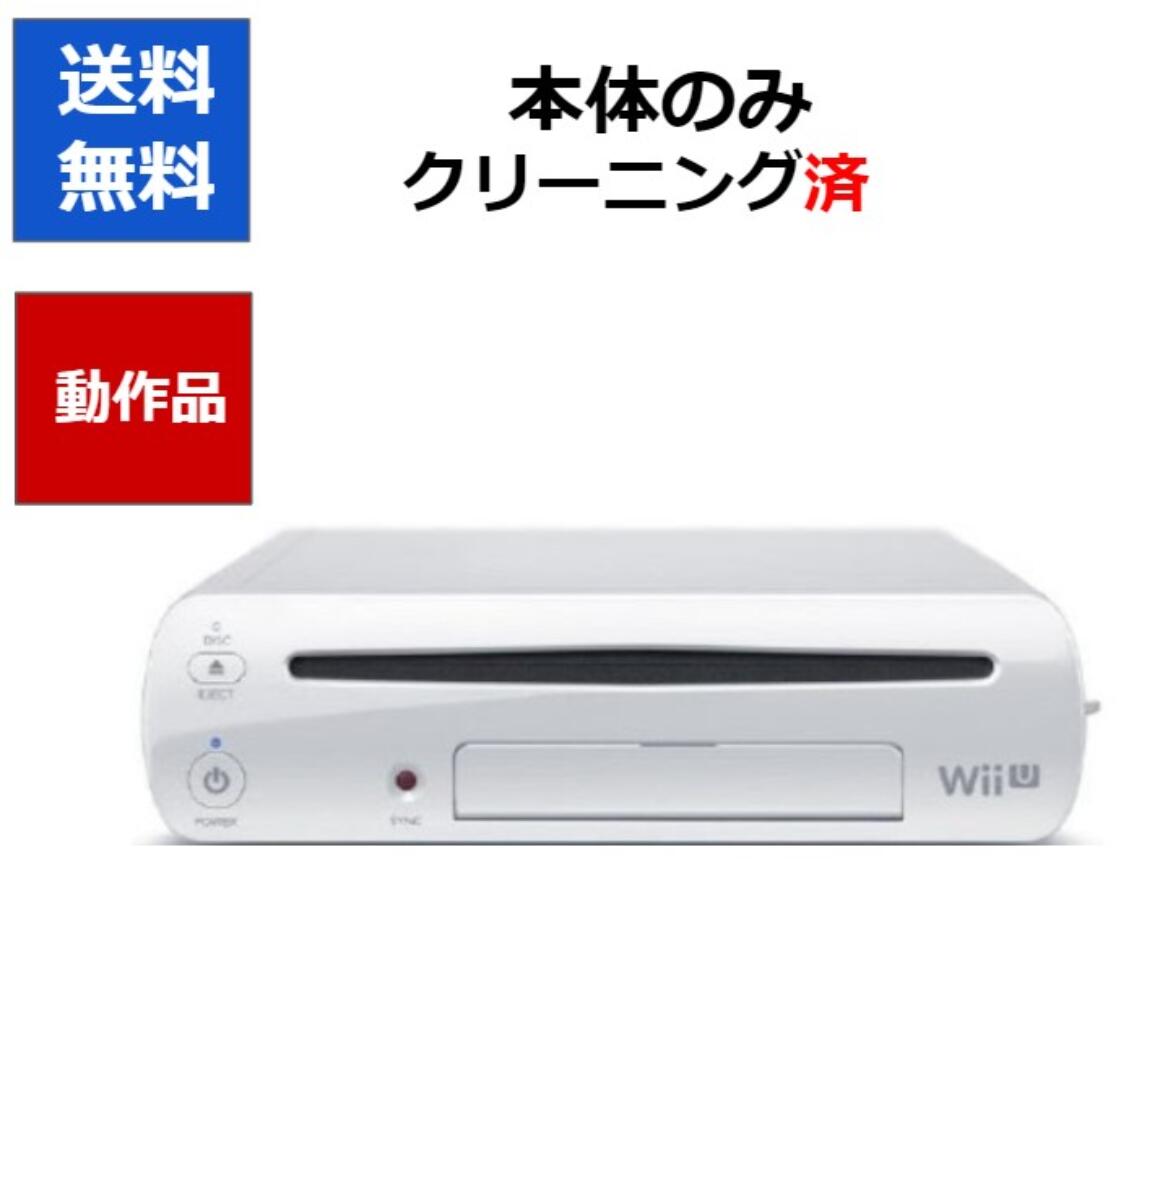 【楽天市場】【レビューキャンペーン実施中!】WiiUゲームパッド 